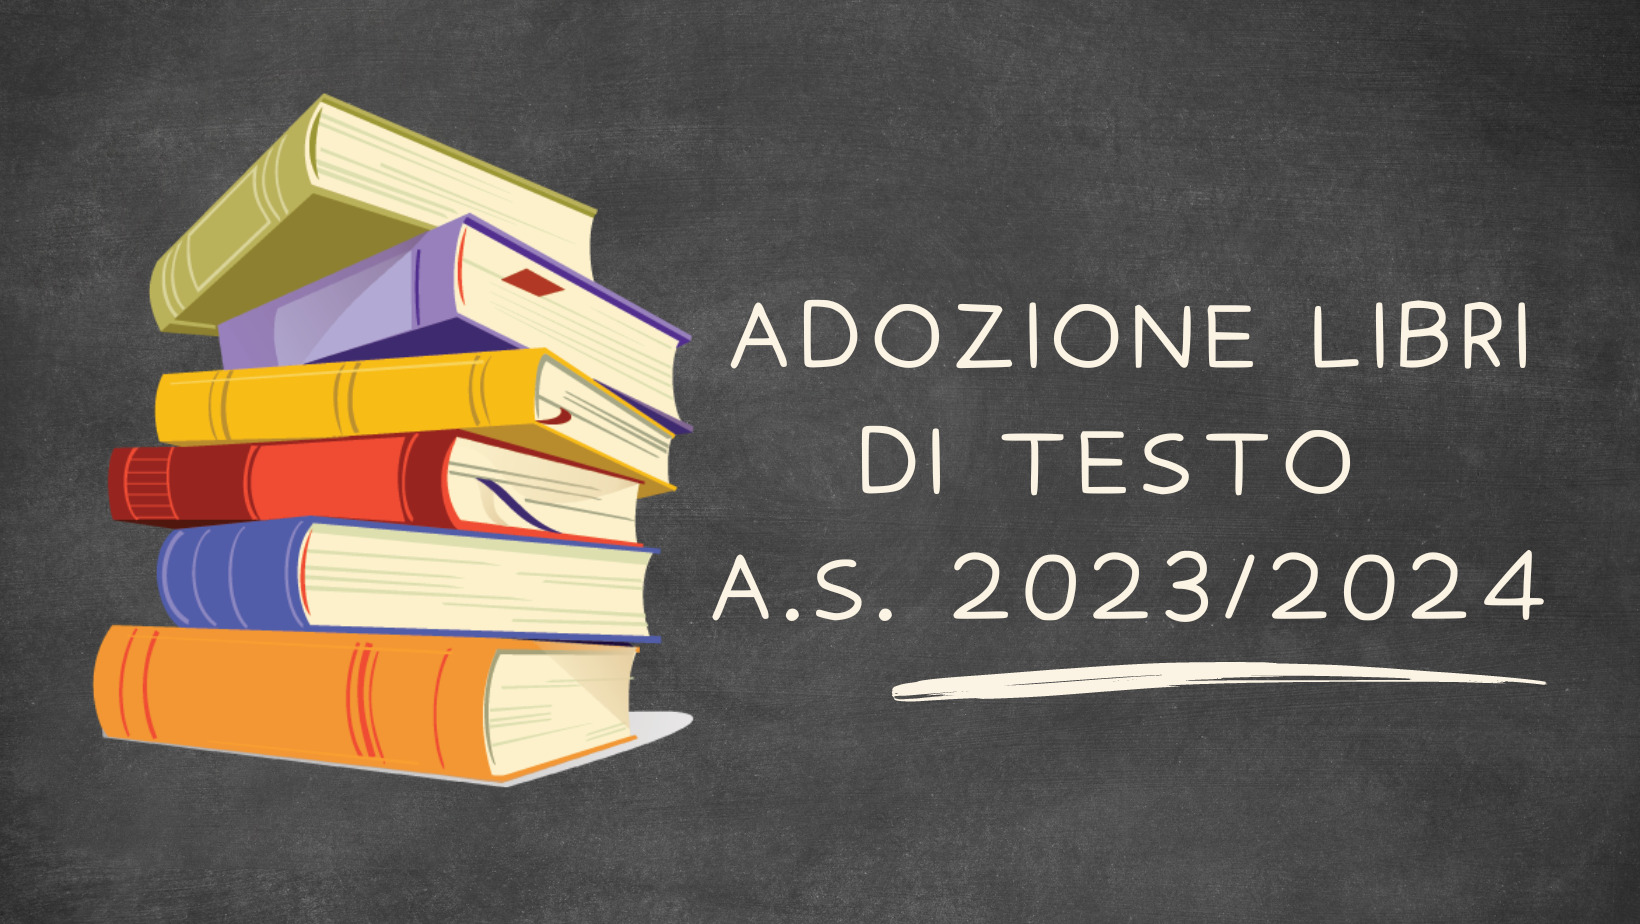 Adozione libri di testo Scuola Secondaria di I grado a.s. 2023/2024 Istituto Rosmini